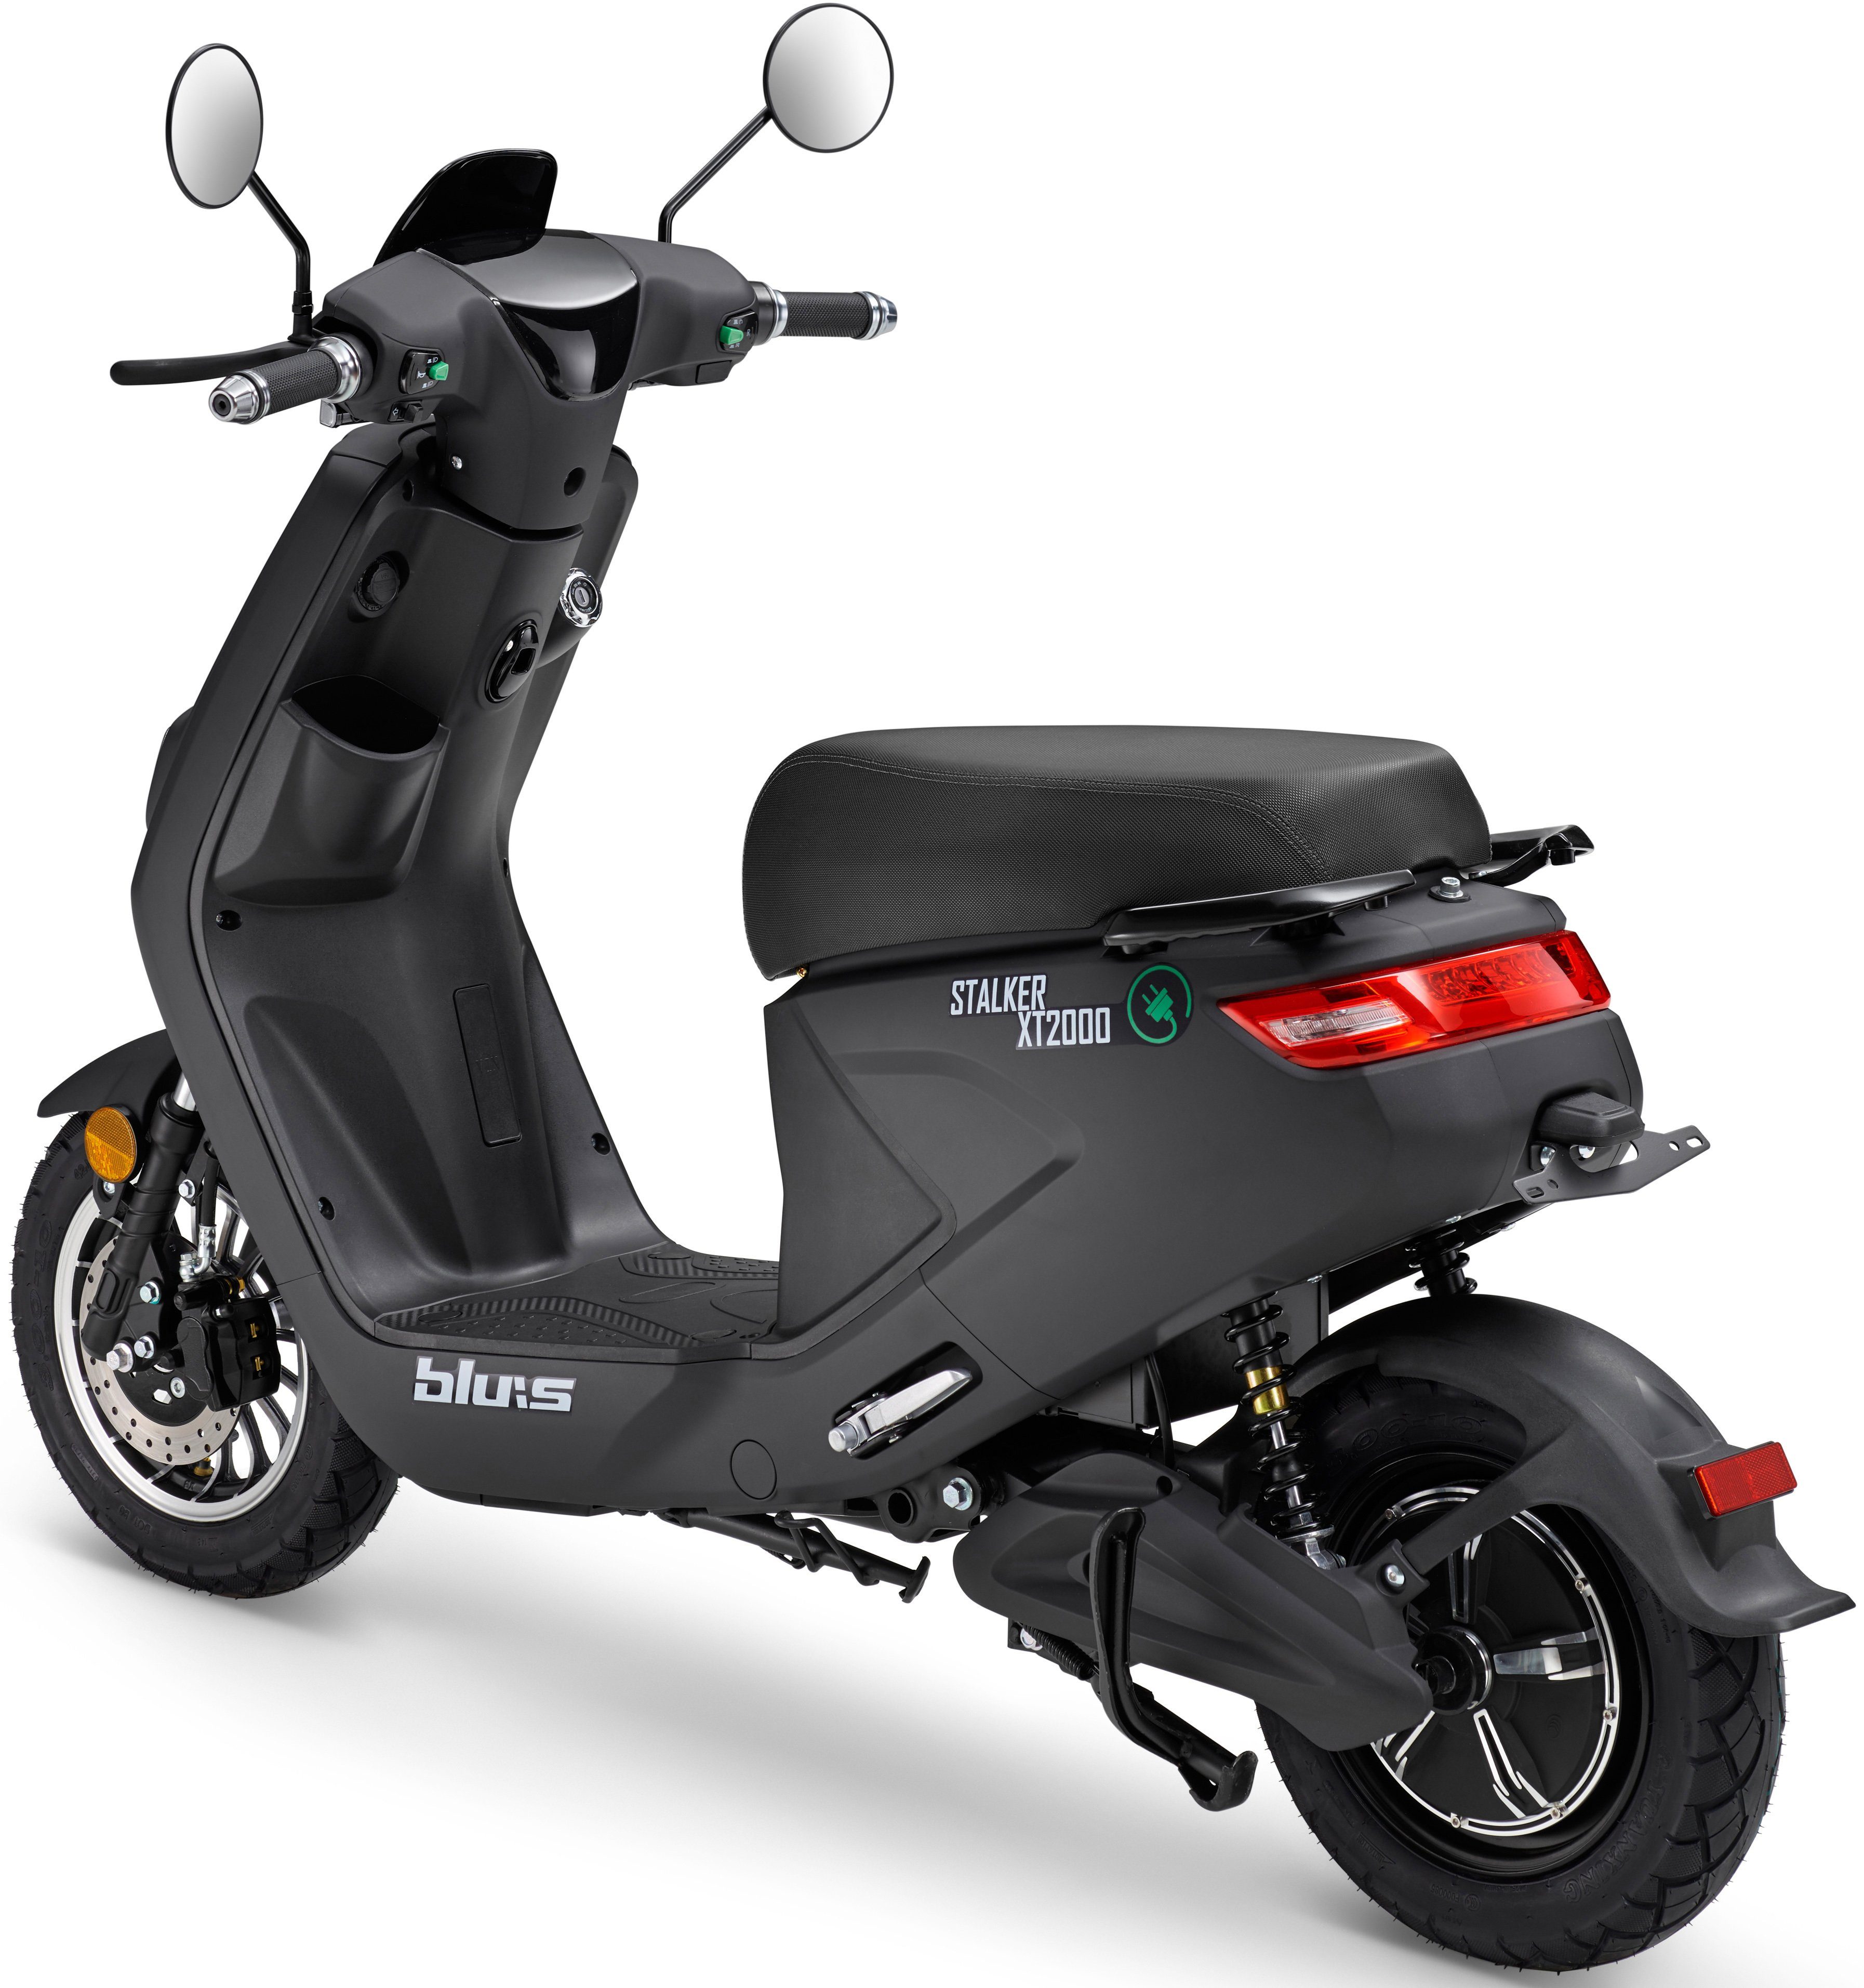 schwarz E-Motorroller Blu:s W, km/h 2000 XT2000, 45